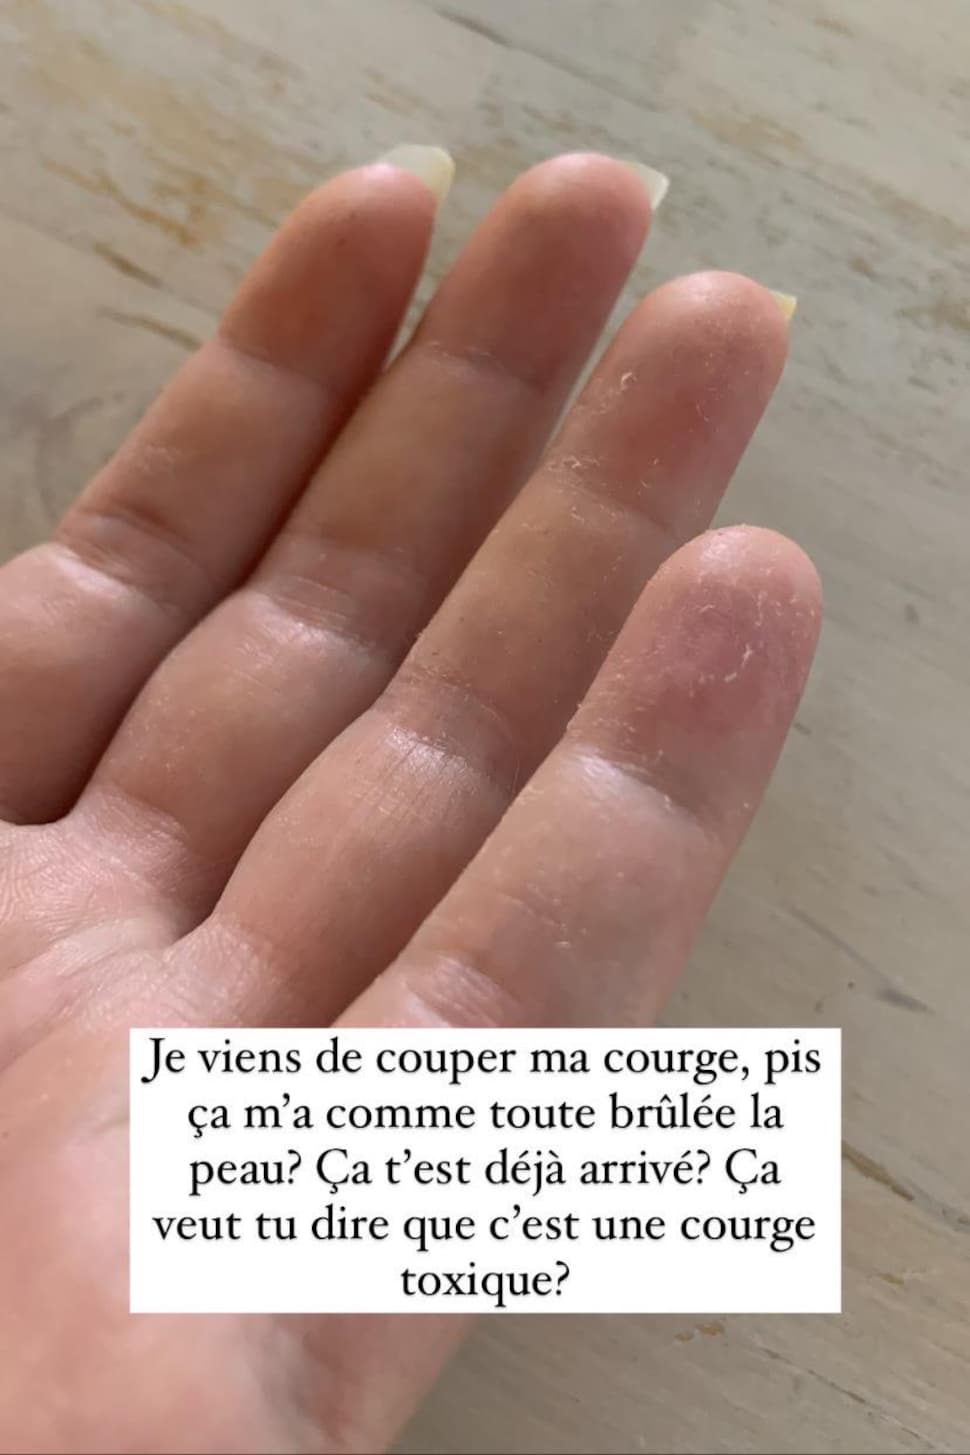 Une photo d'une main avec des rougeurs et la peau qui pèle.